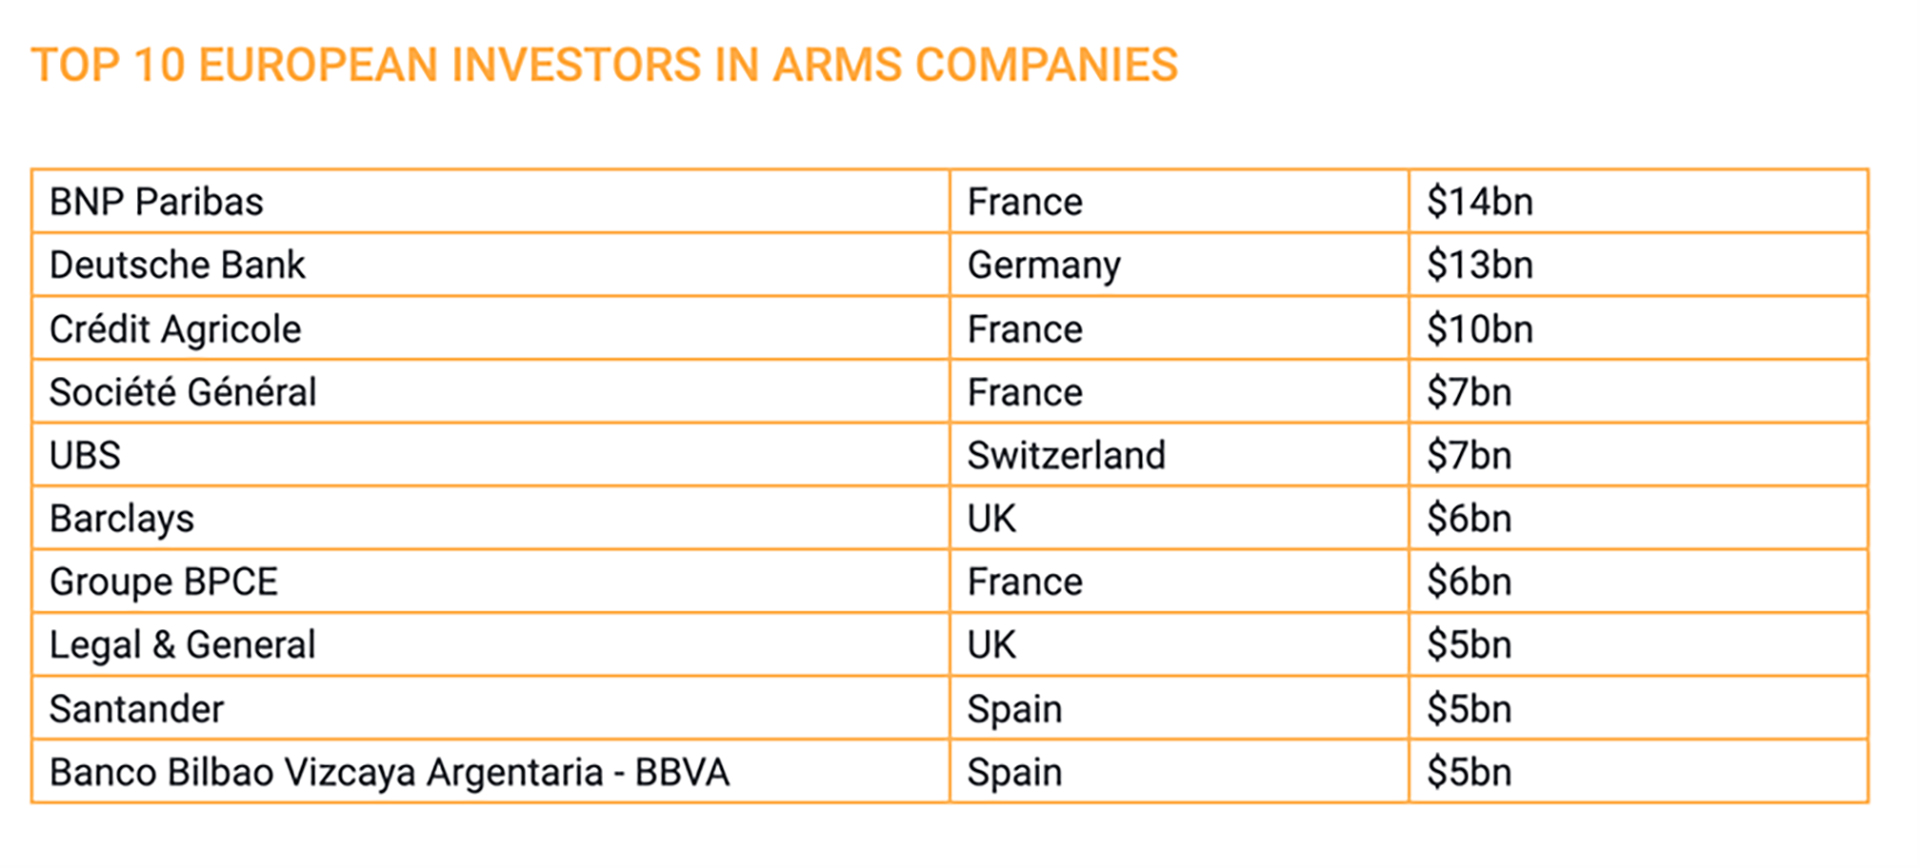 banche e fondi europei che investono nelle armi